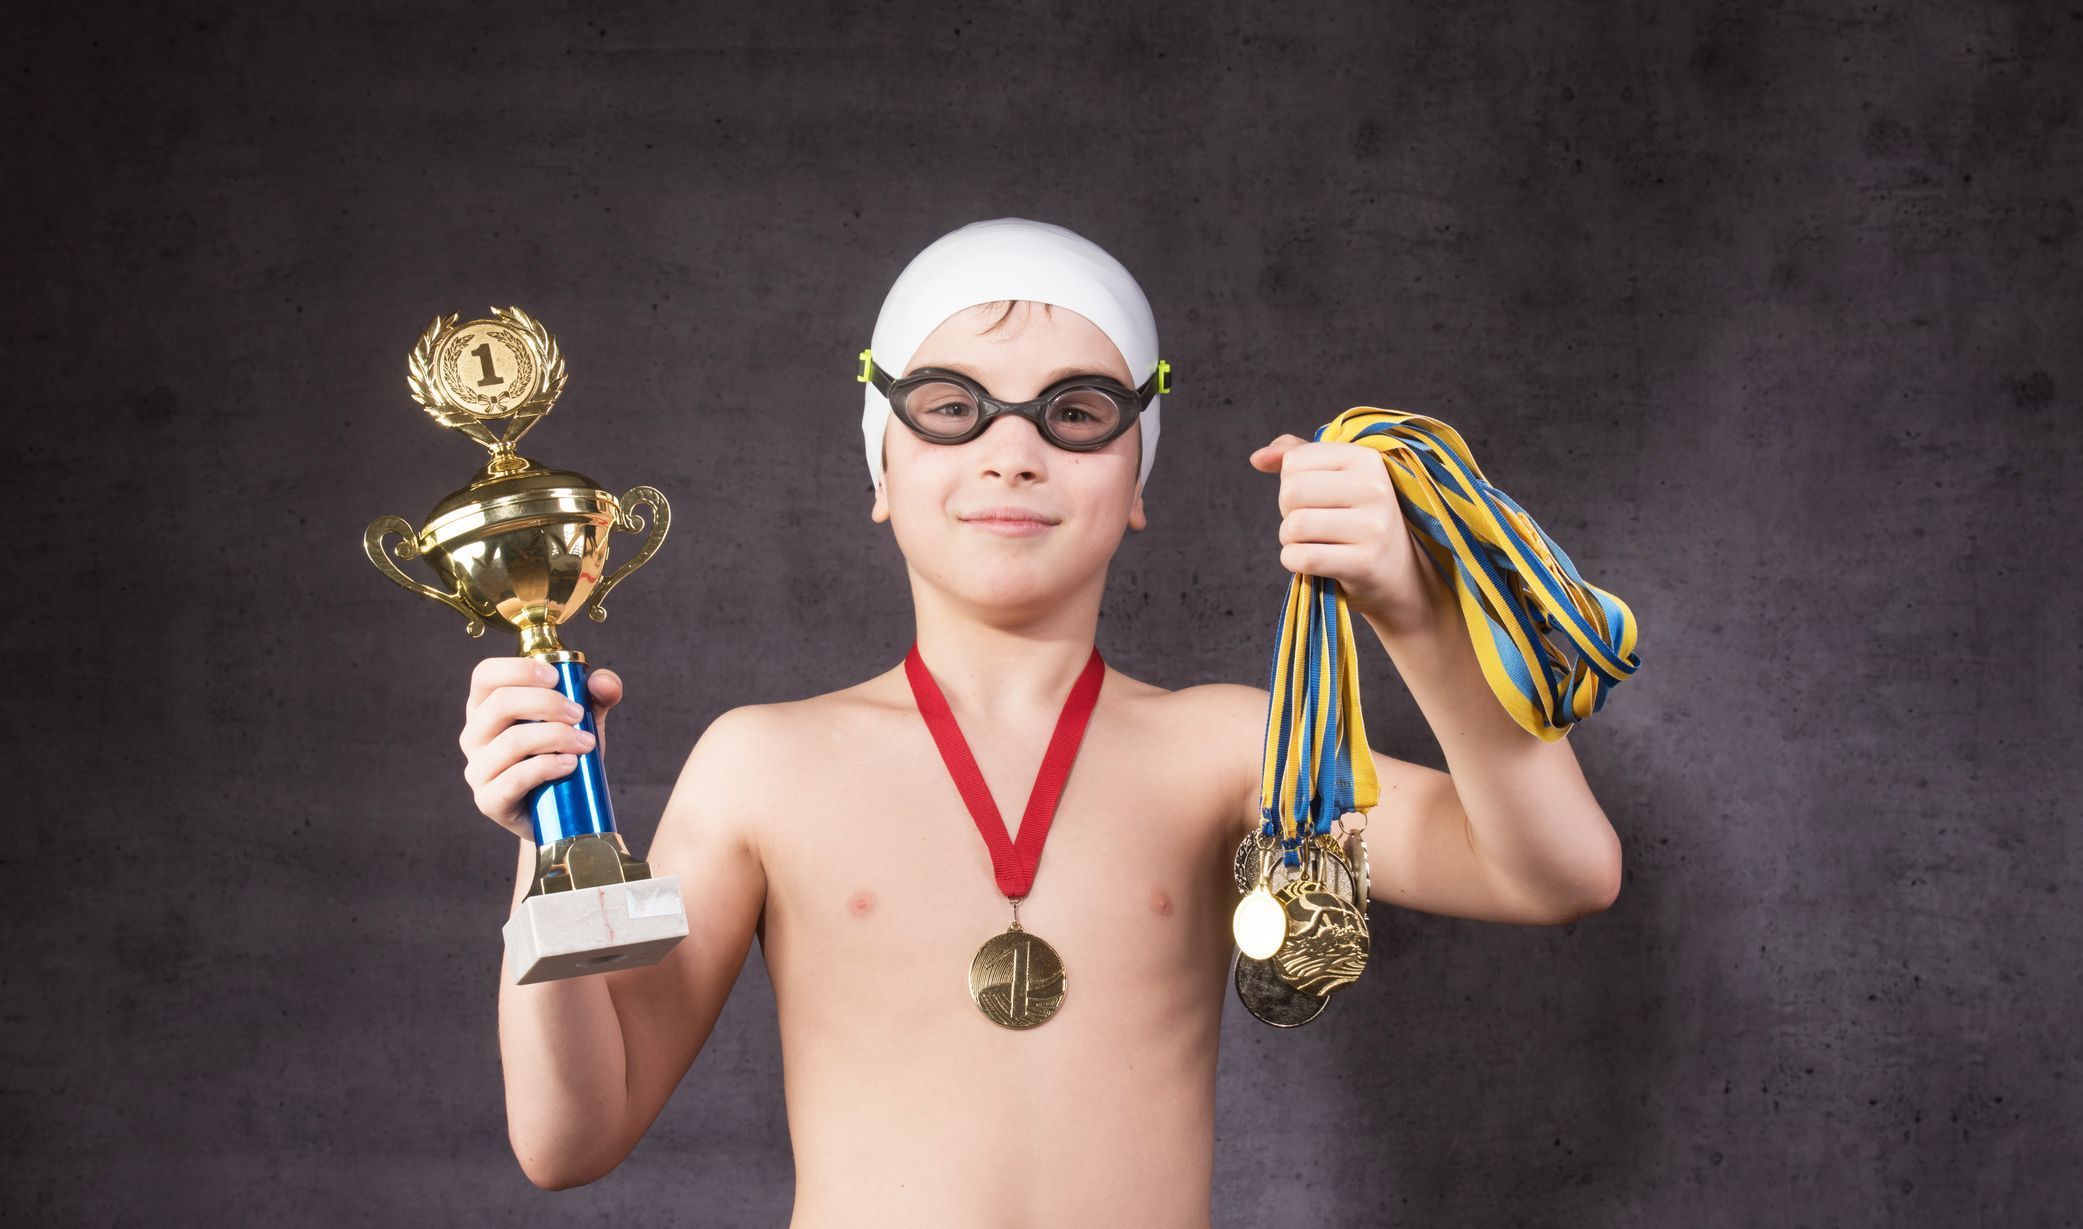 Dítě - talent - úspěch - medaile - vítězství - plavání - plavec - sport